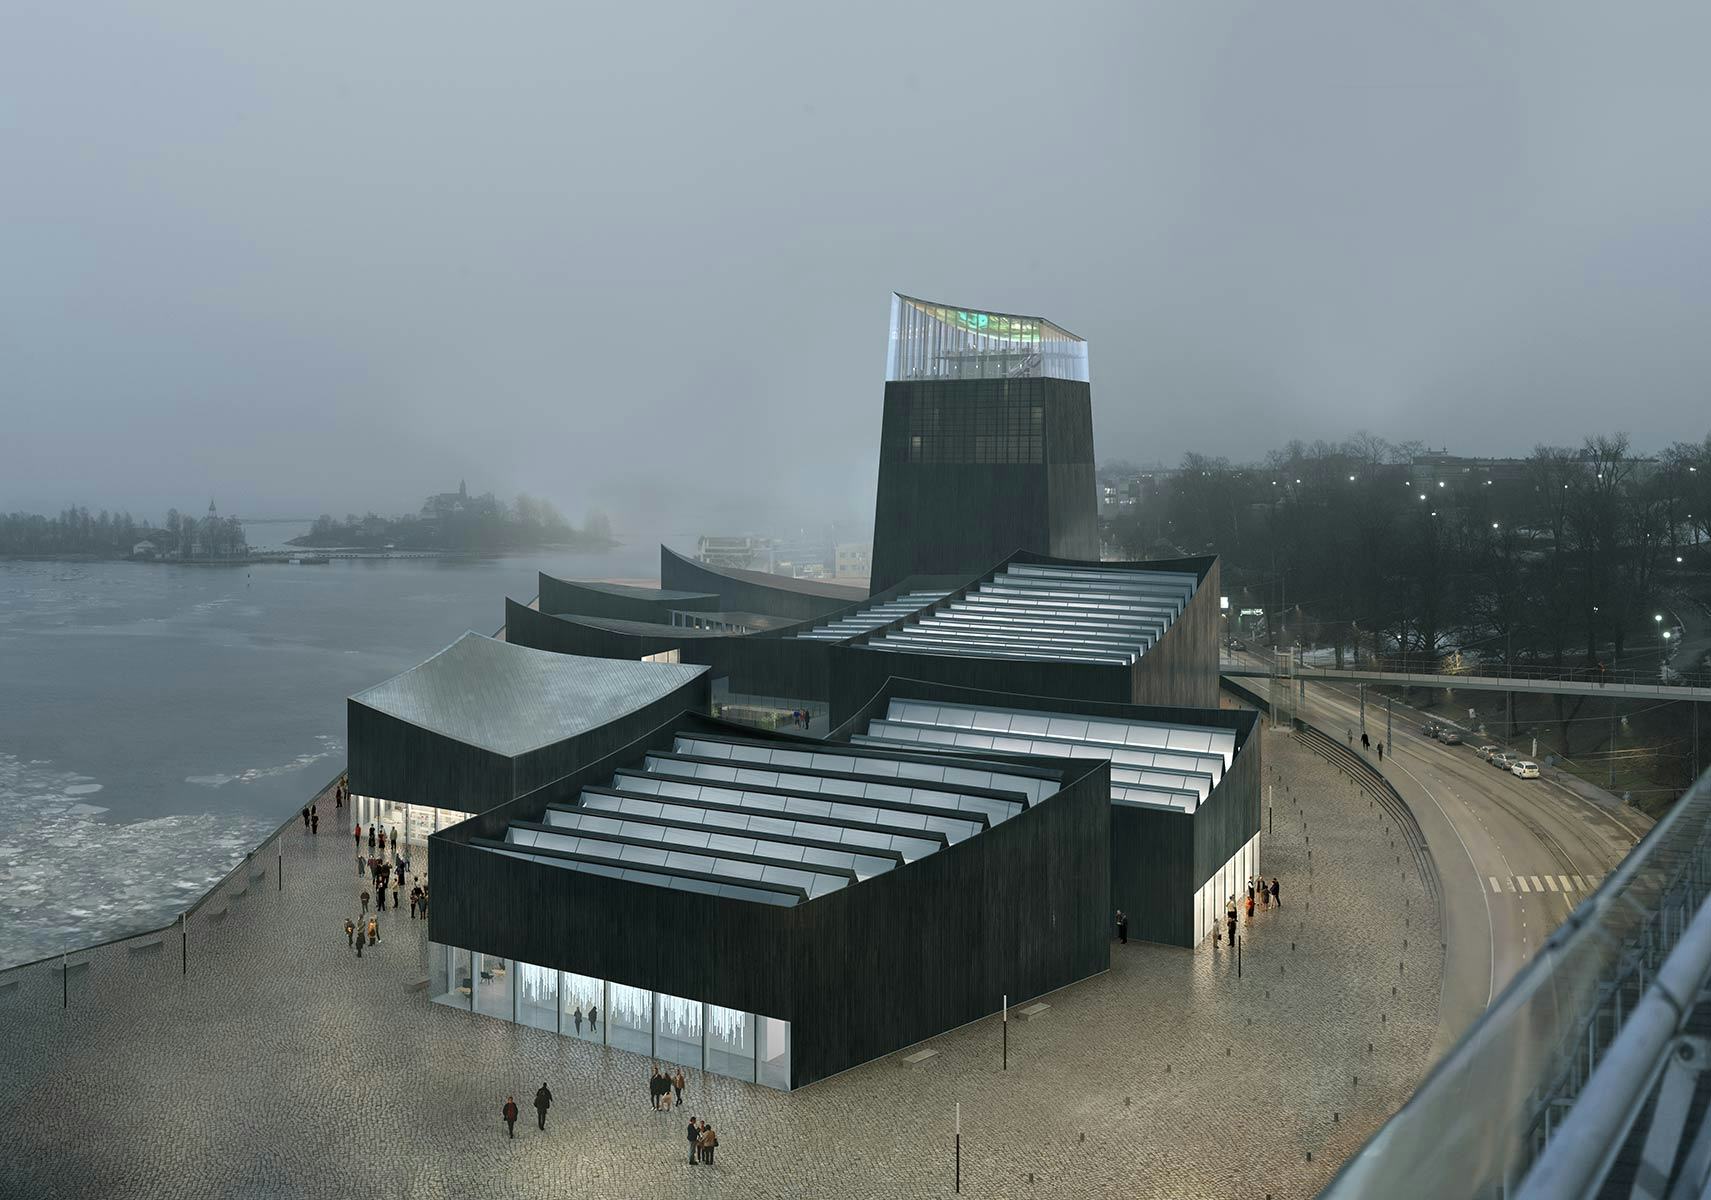 Jong bureau wint Guggenheim-prijsvraag van 1700 collega's